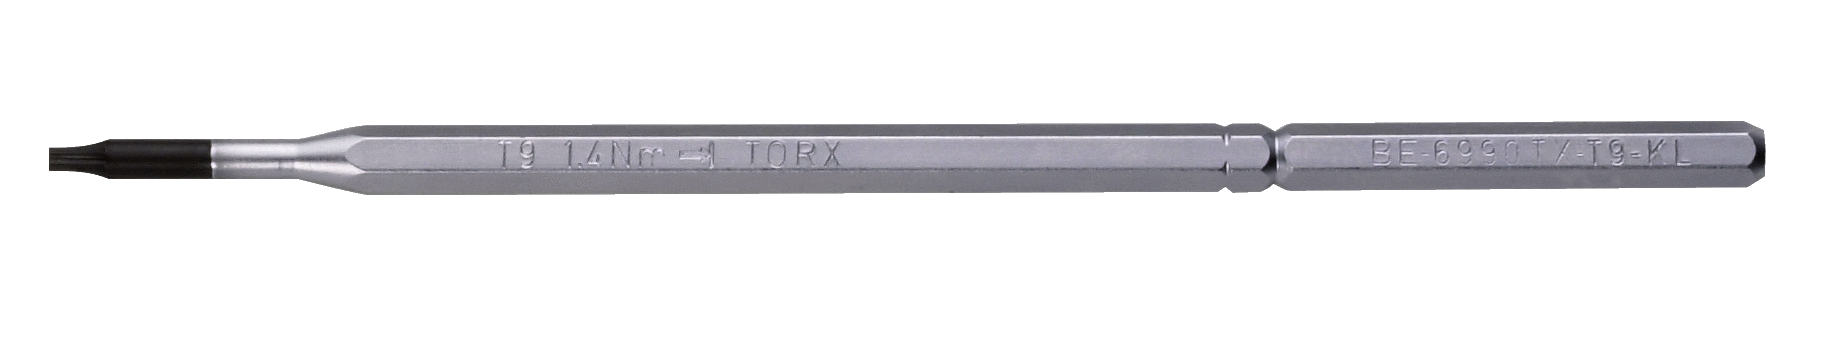 Запасной стержень для винтов с головкой TORX® BAHCO BE-6990TX-T20KL